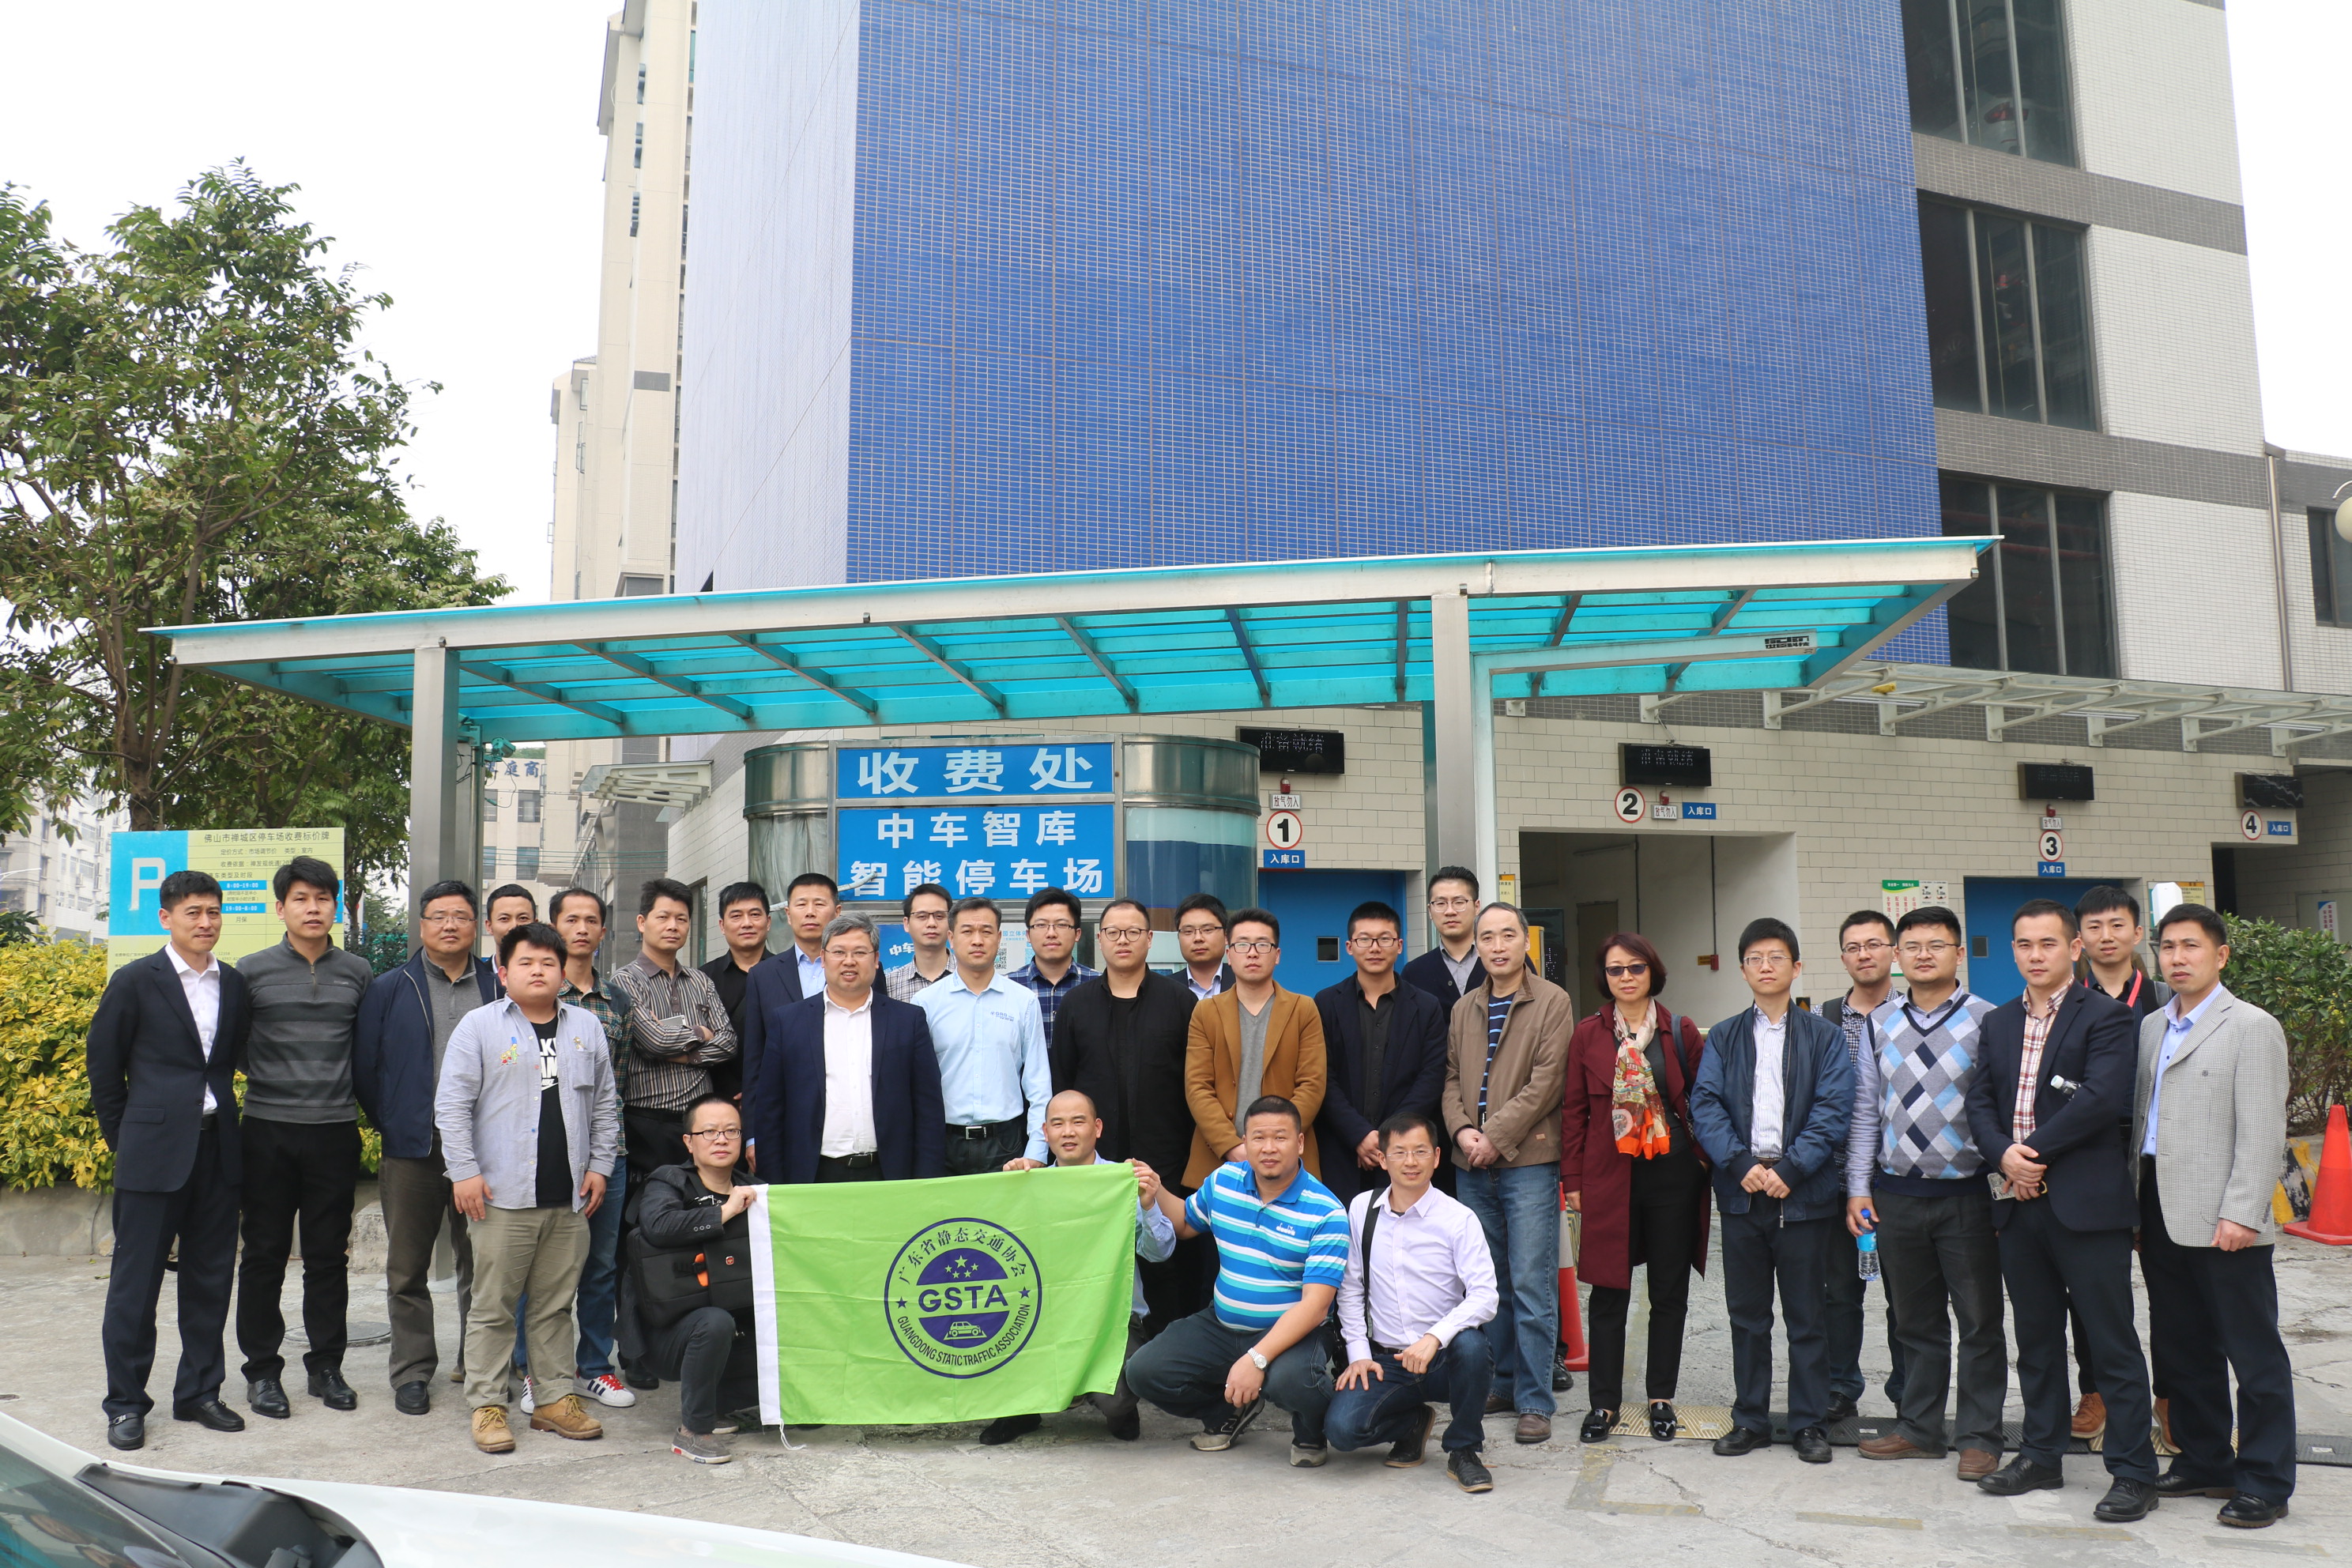 【CSTF2018】论坛考察团赴广佛深实地考察智能立体车库项目